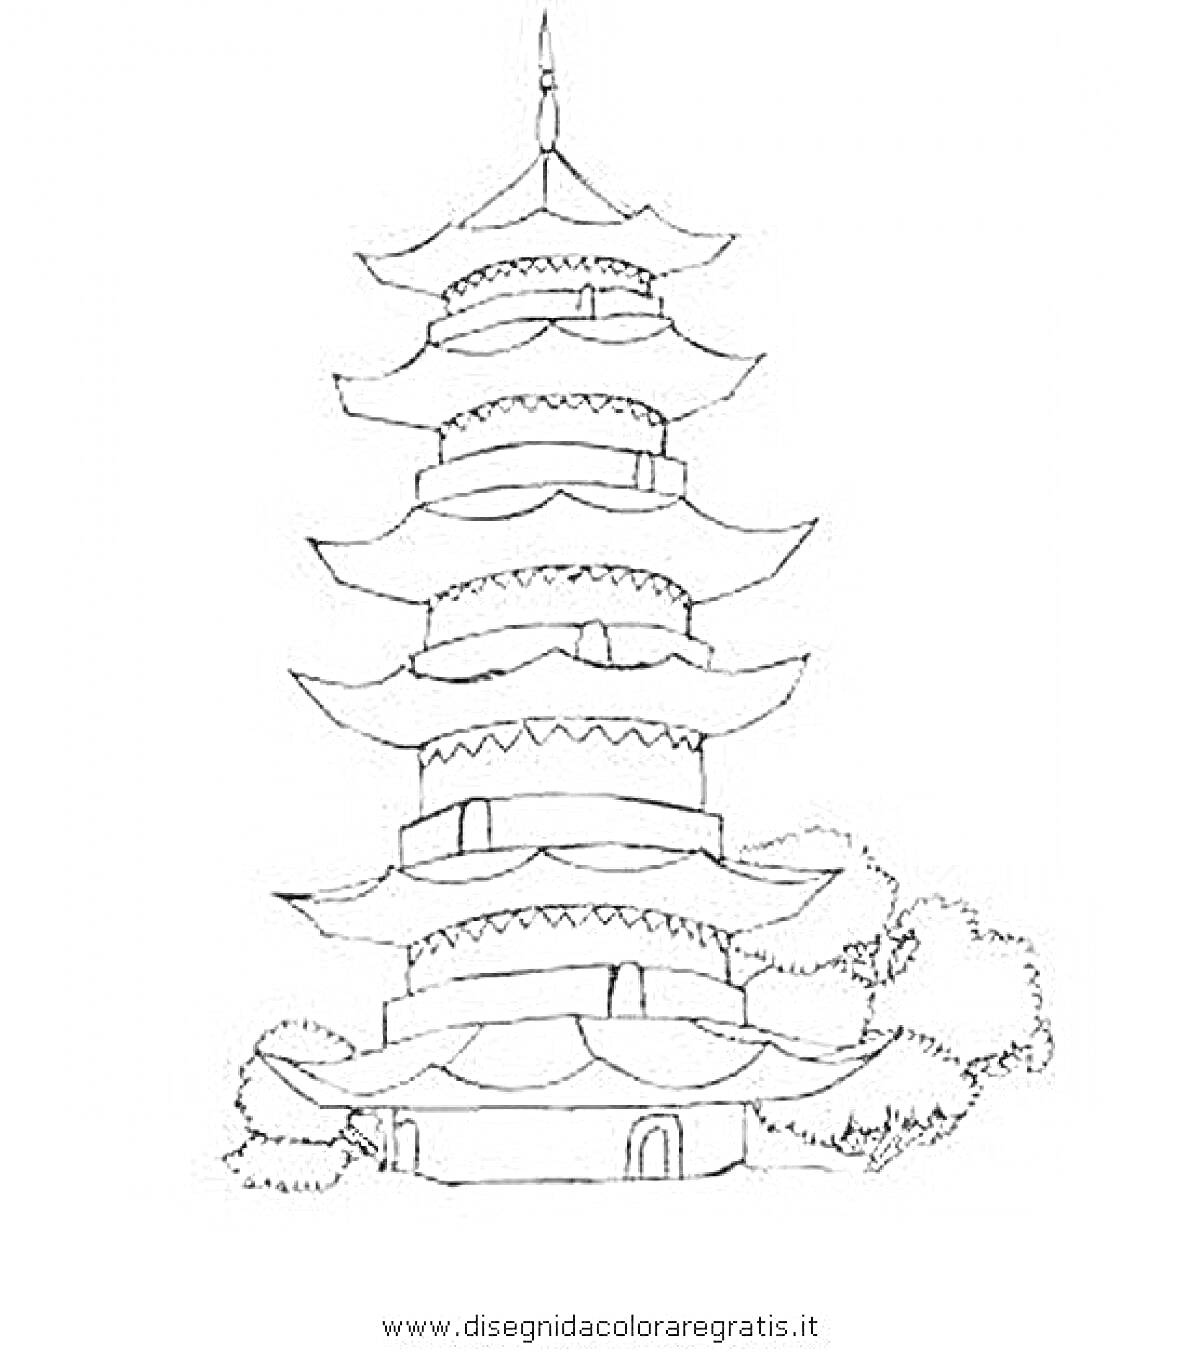 Раскраска Пагода с семью уровнями, окружённая деревьями